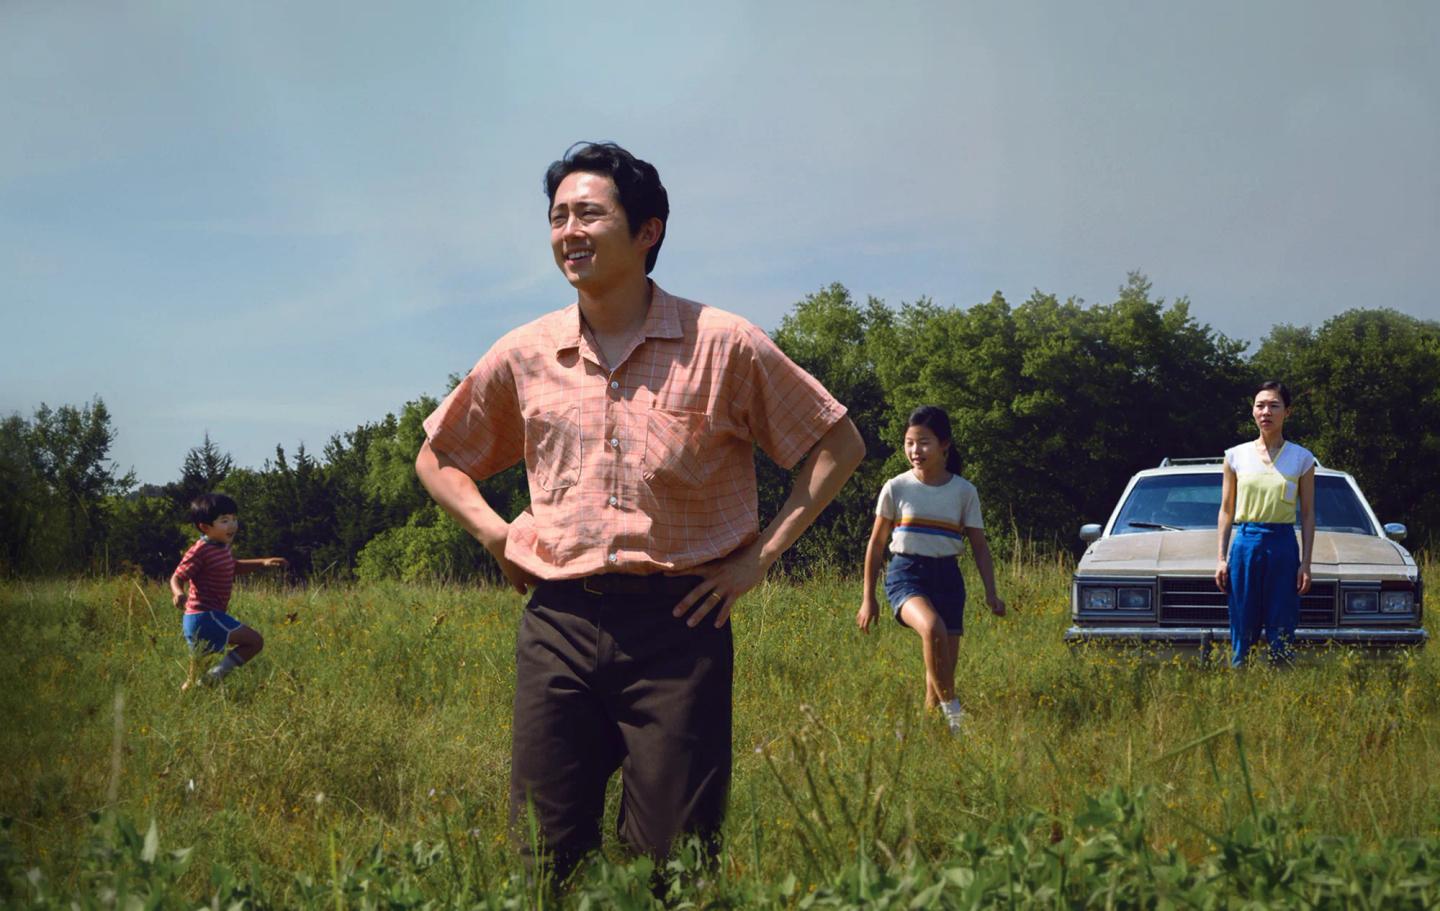 Steven Yeun et al. running in a field